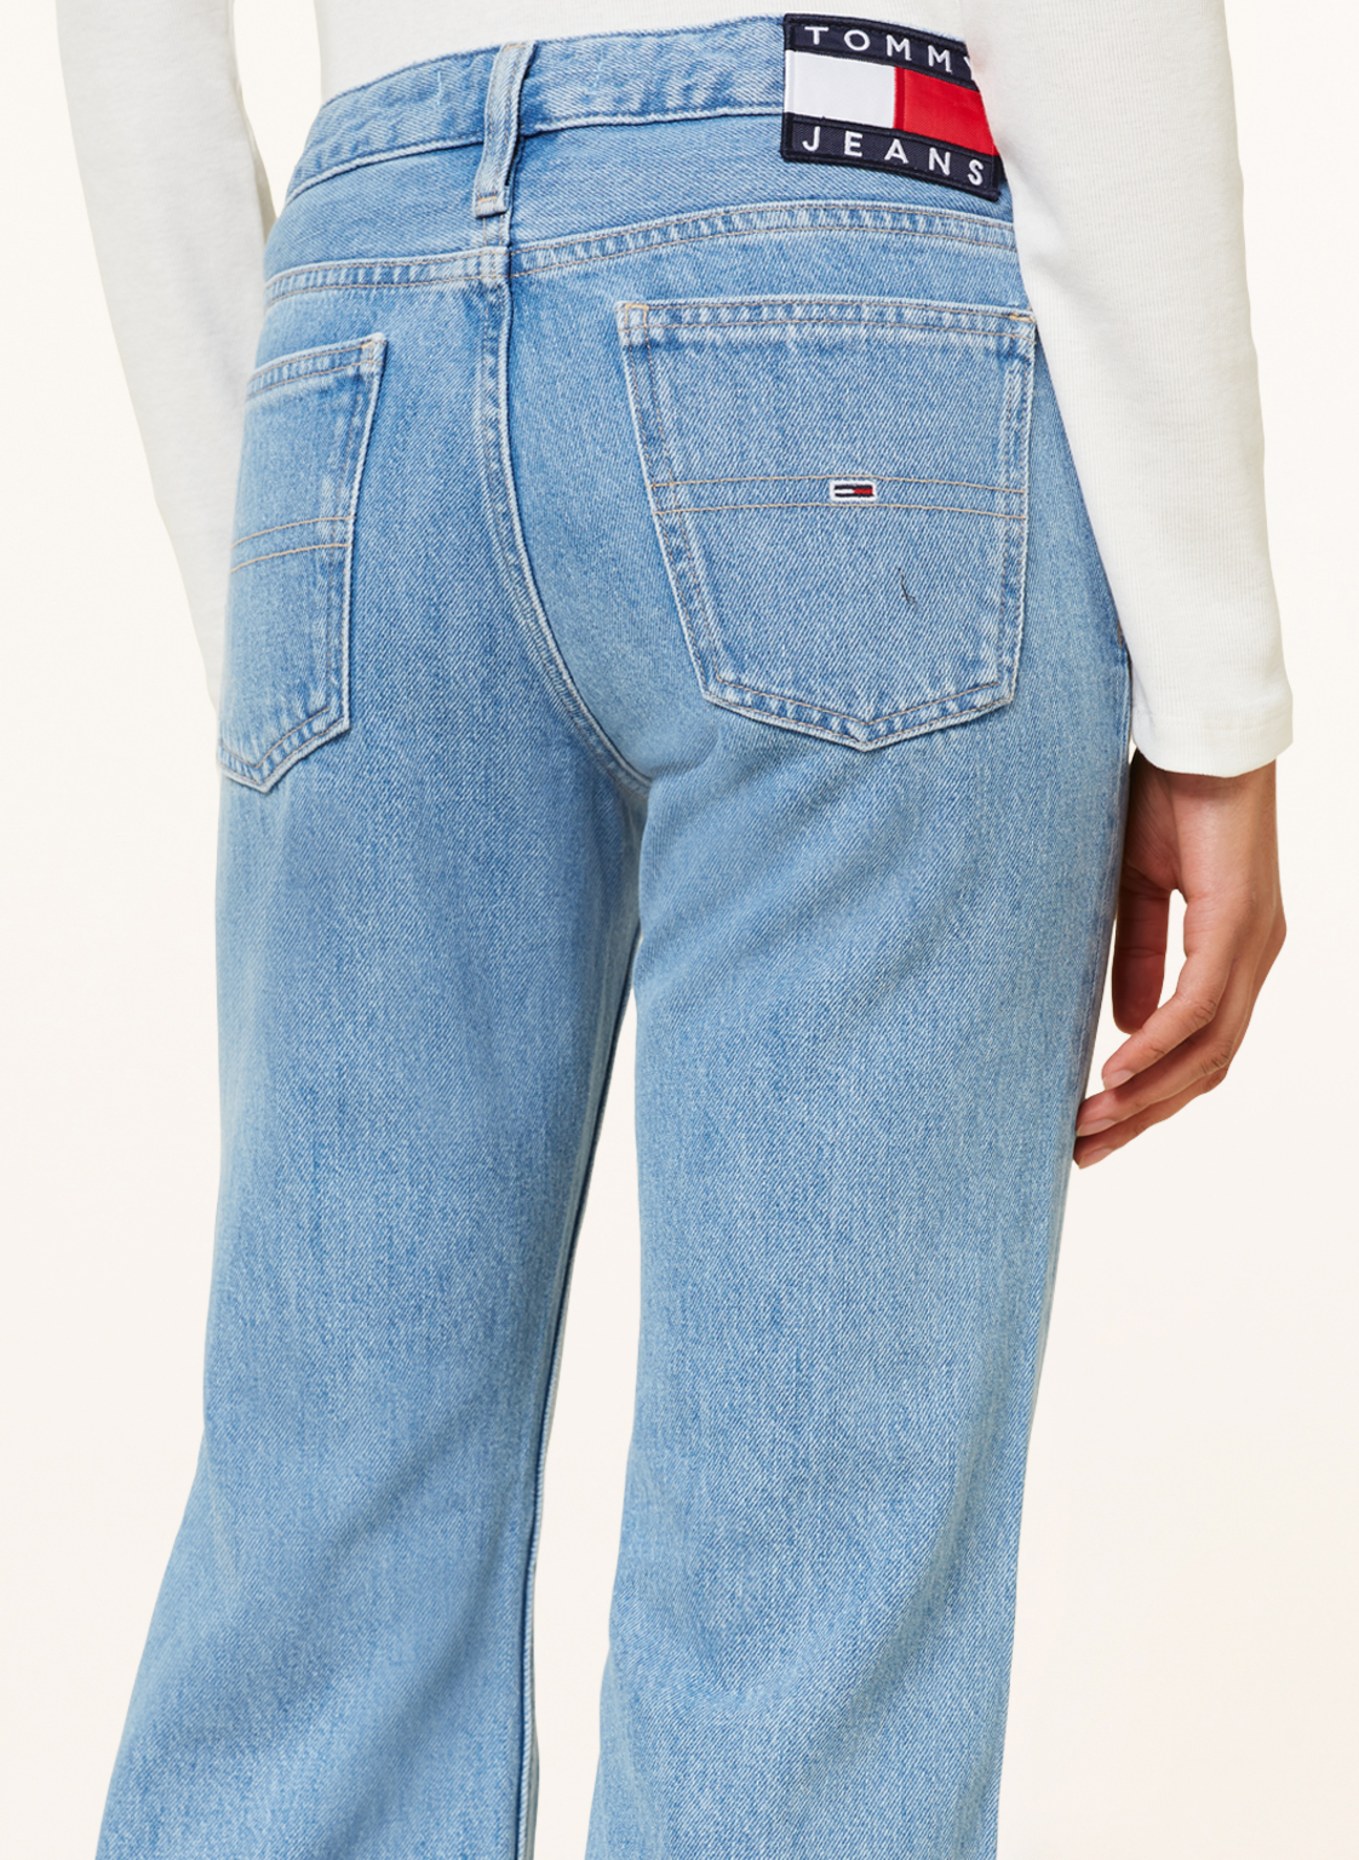 TOMMY JEANS Flared jeans SOPHIE, Color: 1AB Denim Light (Image 5)